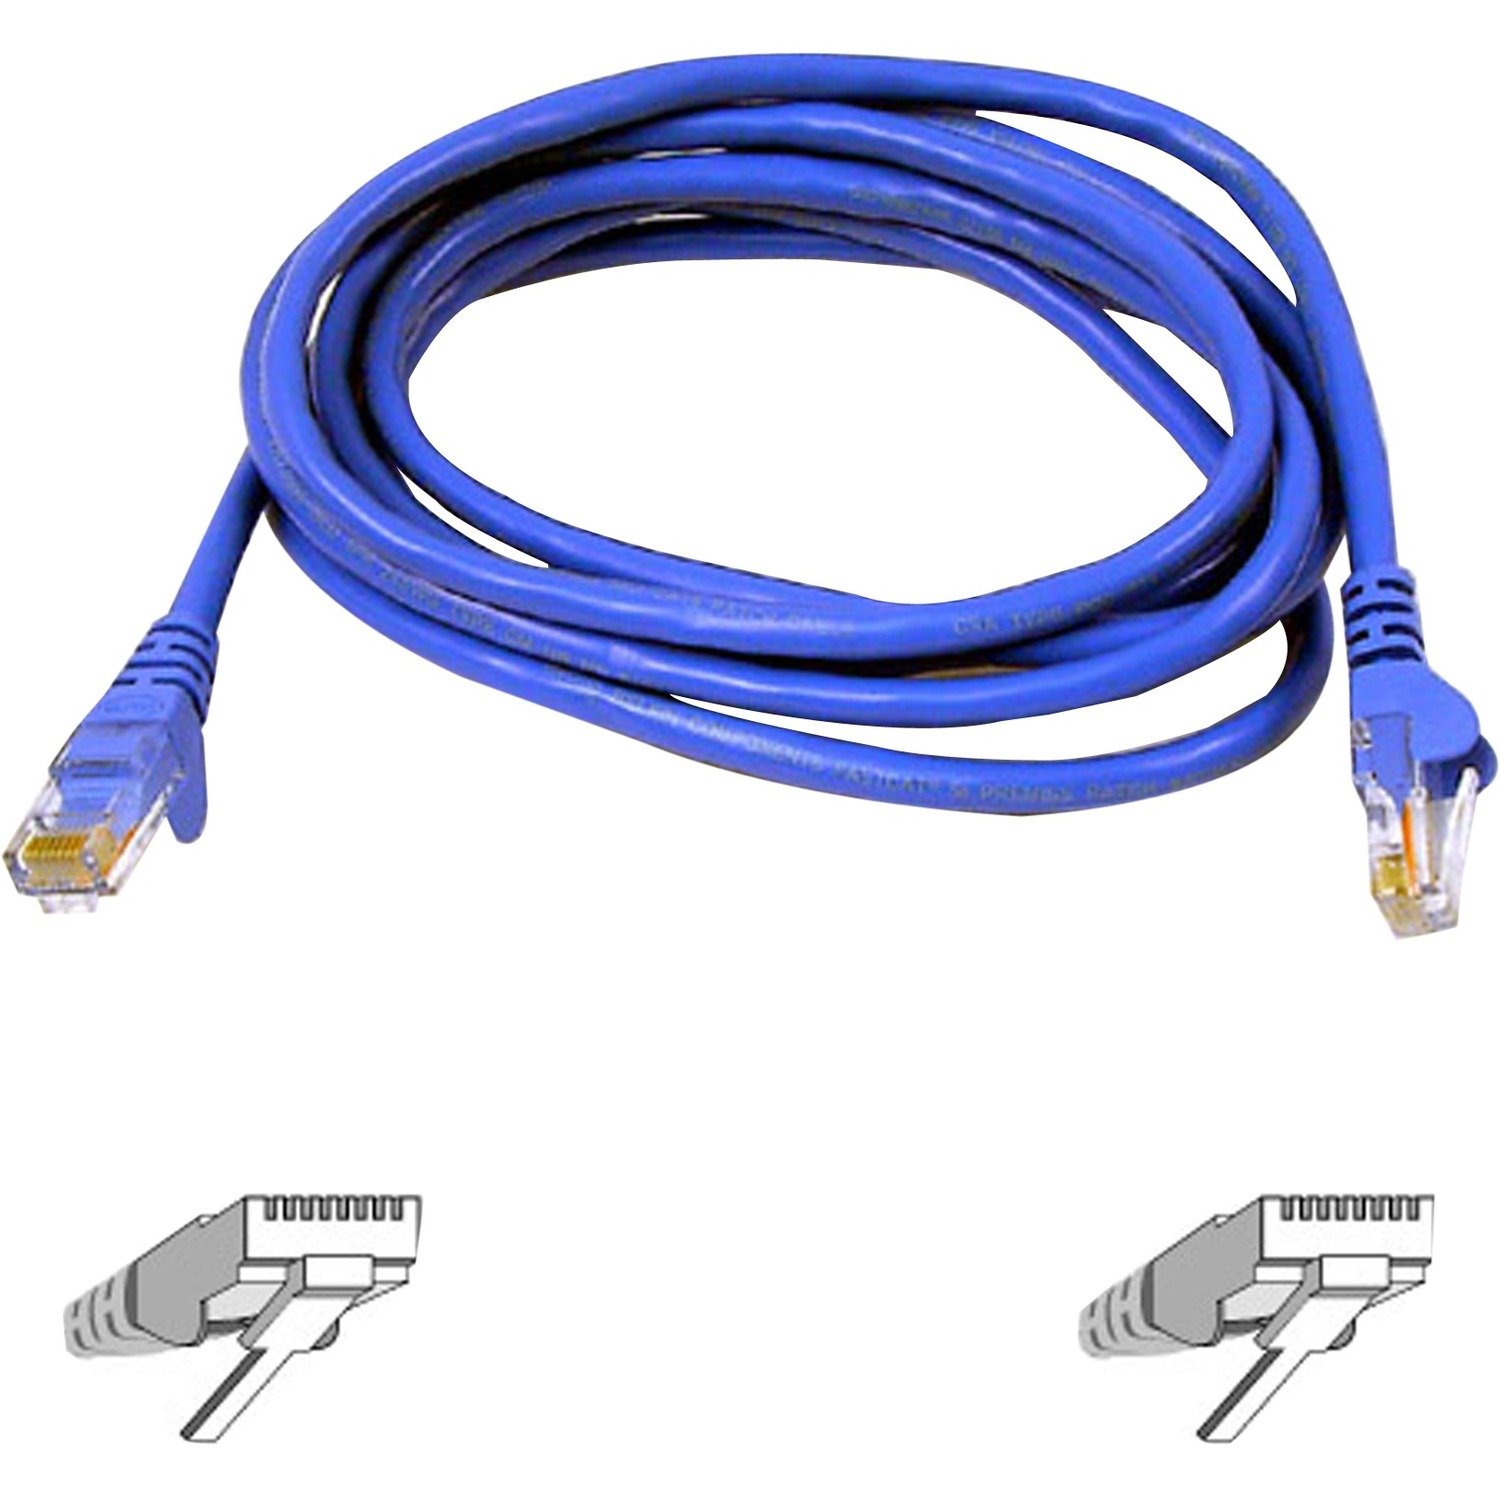 Belkin CAT6 Ethernet Patch Cable, RJ45, M/M